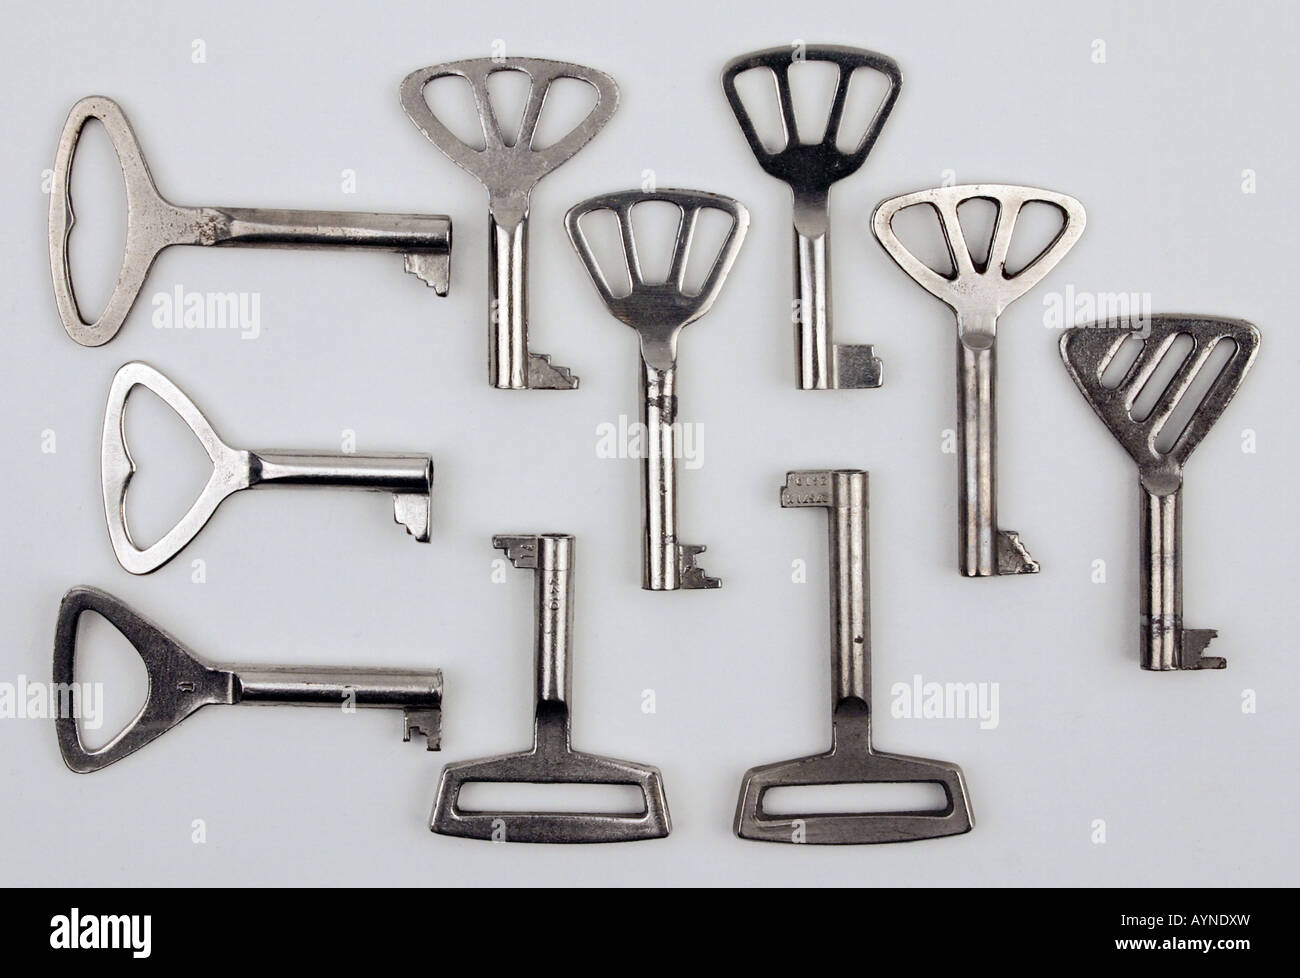 Haushalt, Schlüssel, Schrank und Schrankschlüssel, hergestellt vom Kombinat  Schloss- und Metallwaren Brandenburg, DDR, 1956 Stockfotografie - Alamy